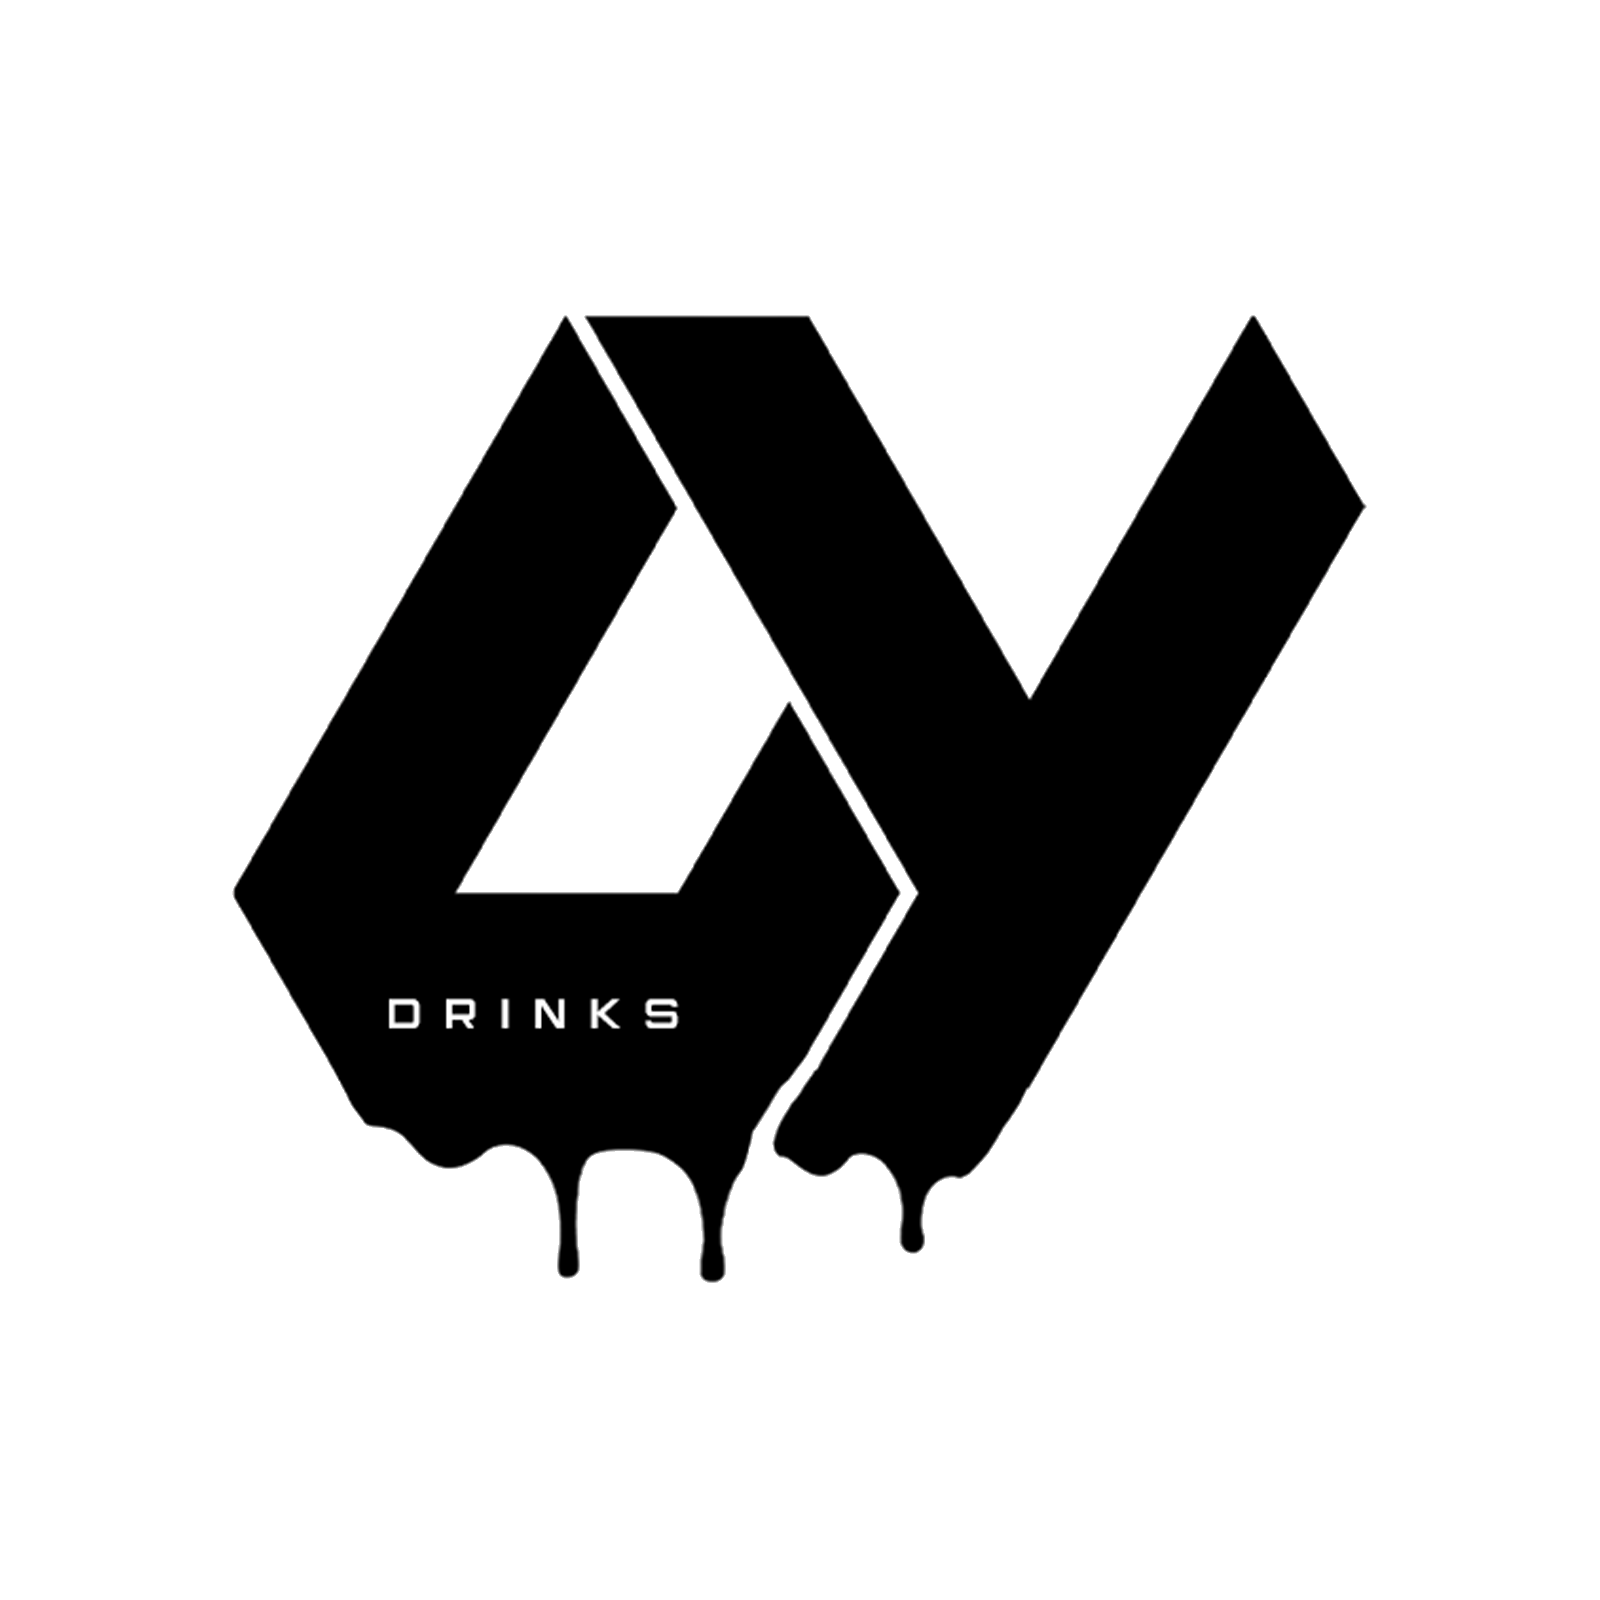 OY Drinks logotyp i svartvitt.png